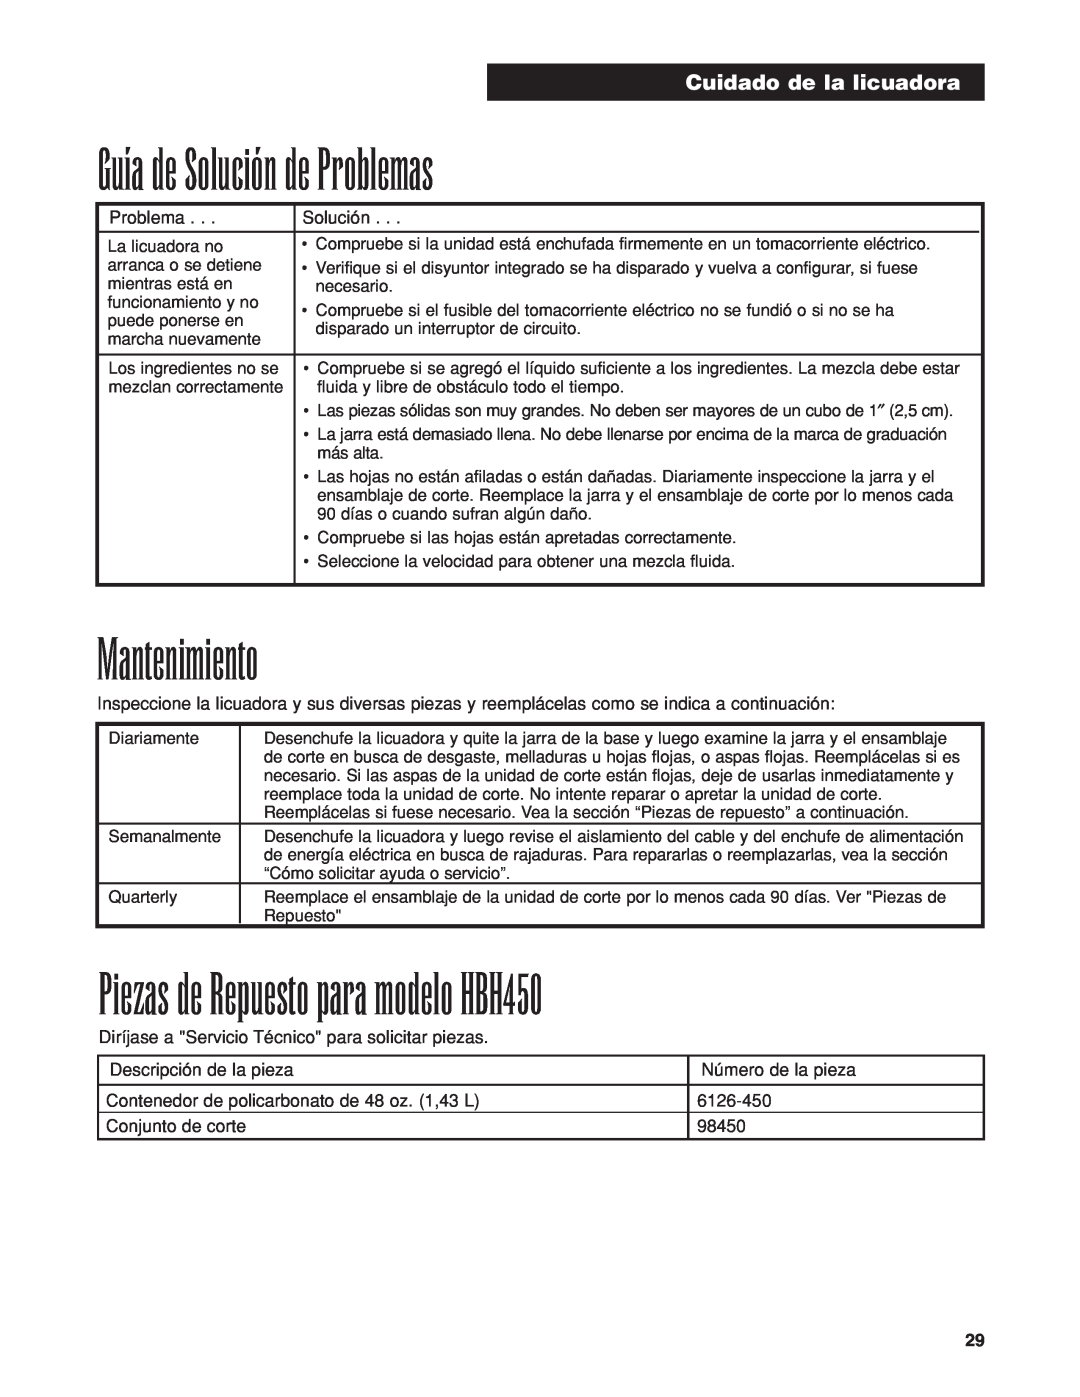 Proctor-Silex manuel dutilisation Guía de Solución de Problemas, Mantenimiento, Piezas de Repuesto para modelo HBH450 